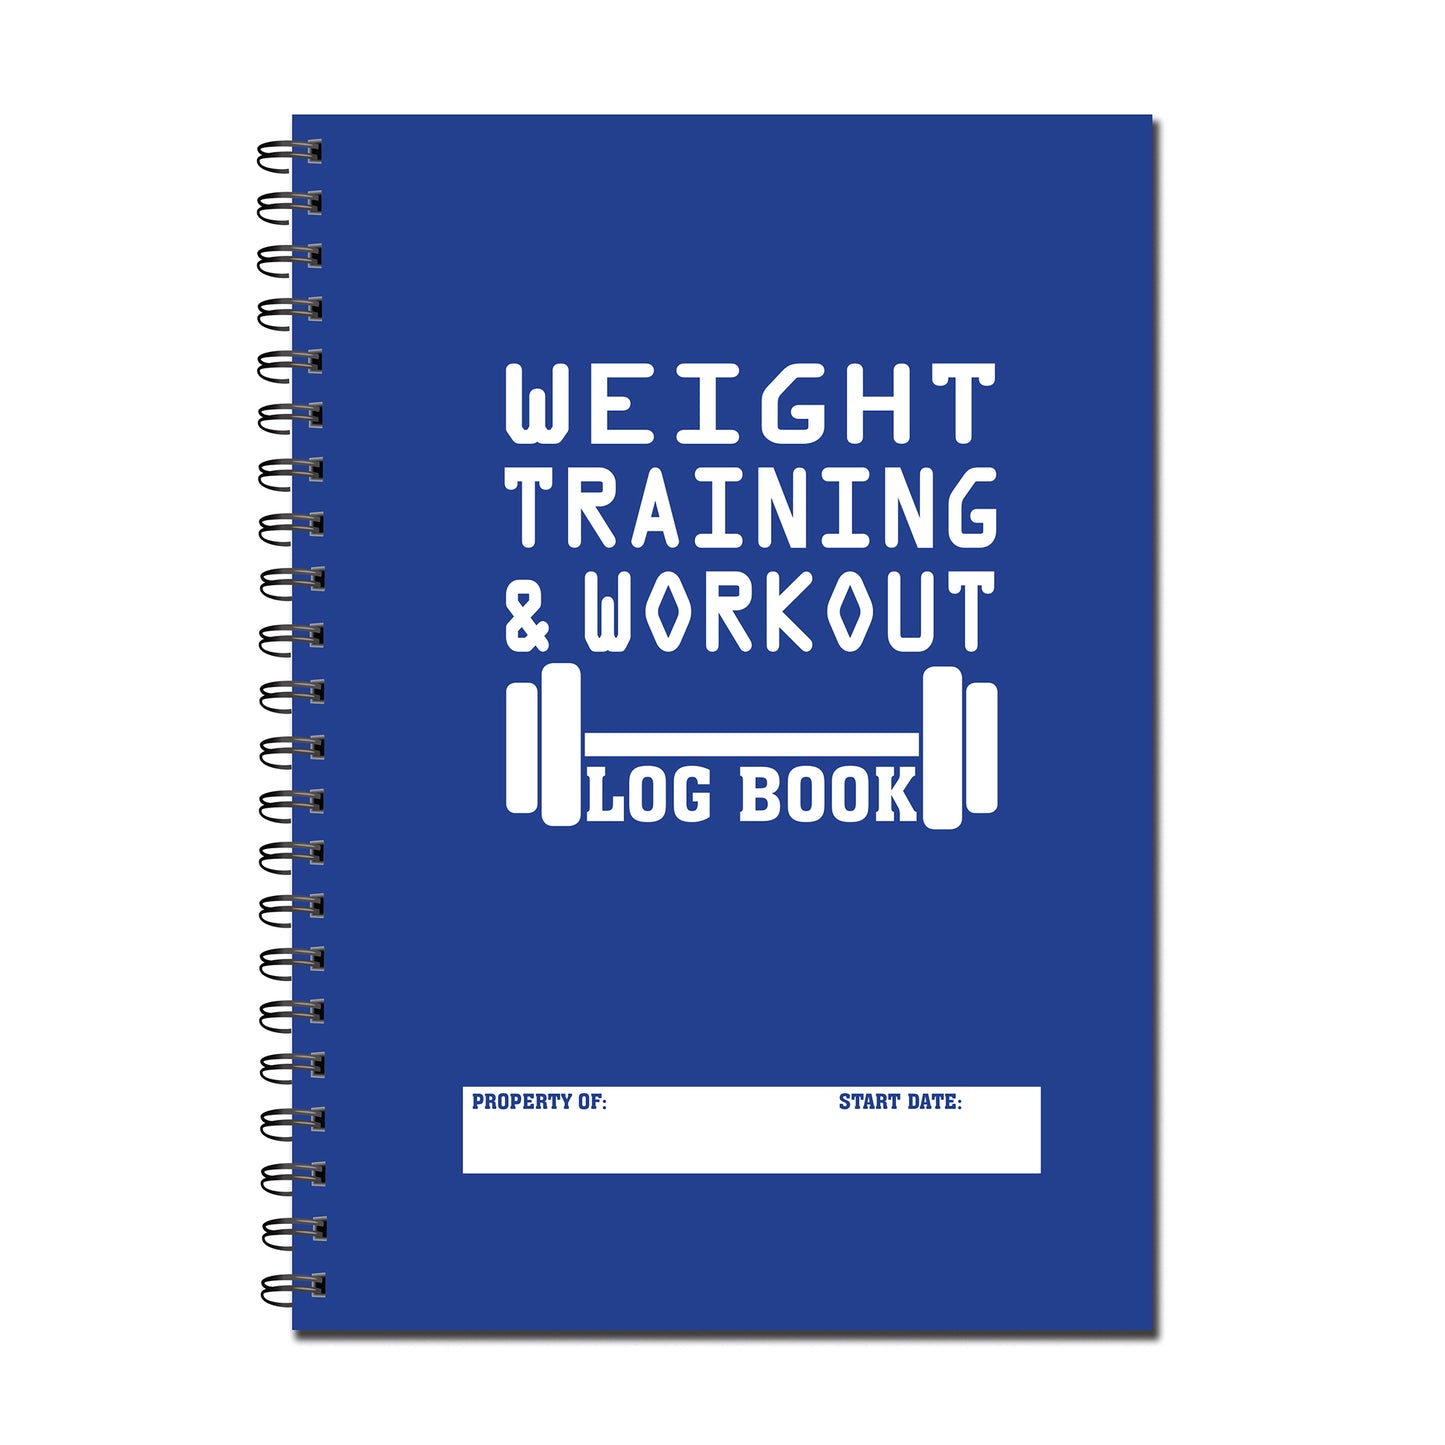 Weight Training & Workout Log Book, A5